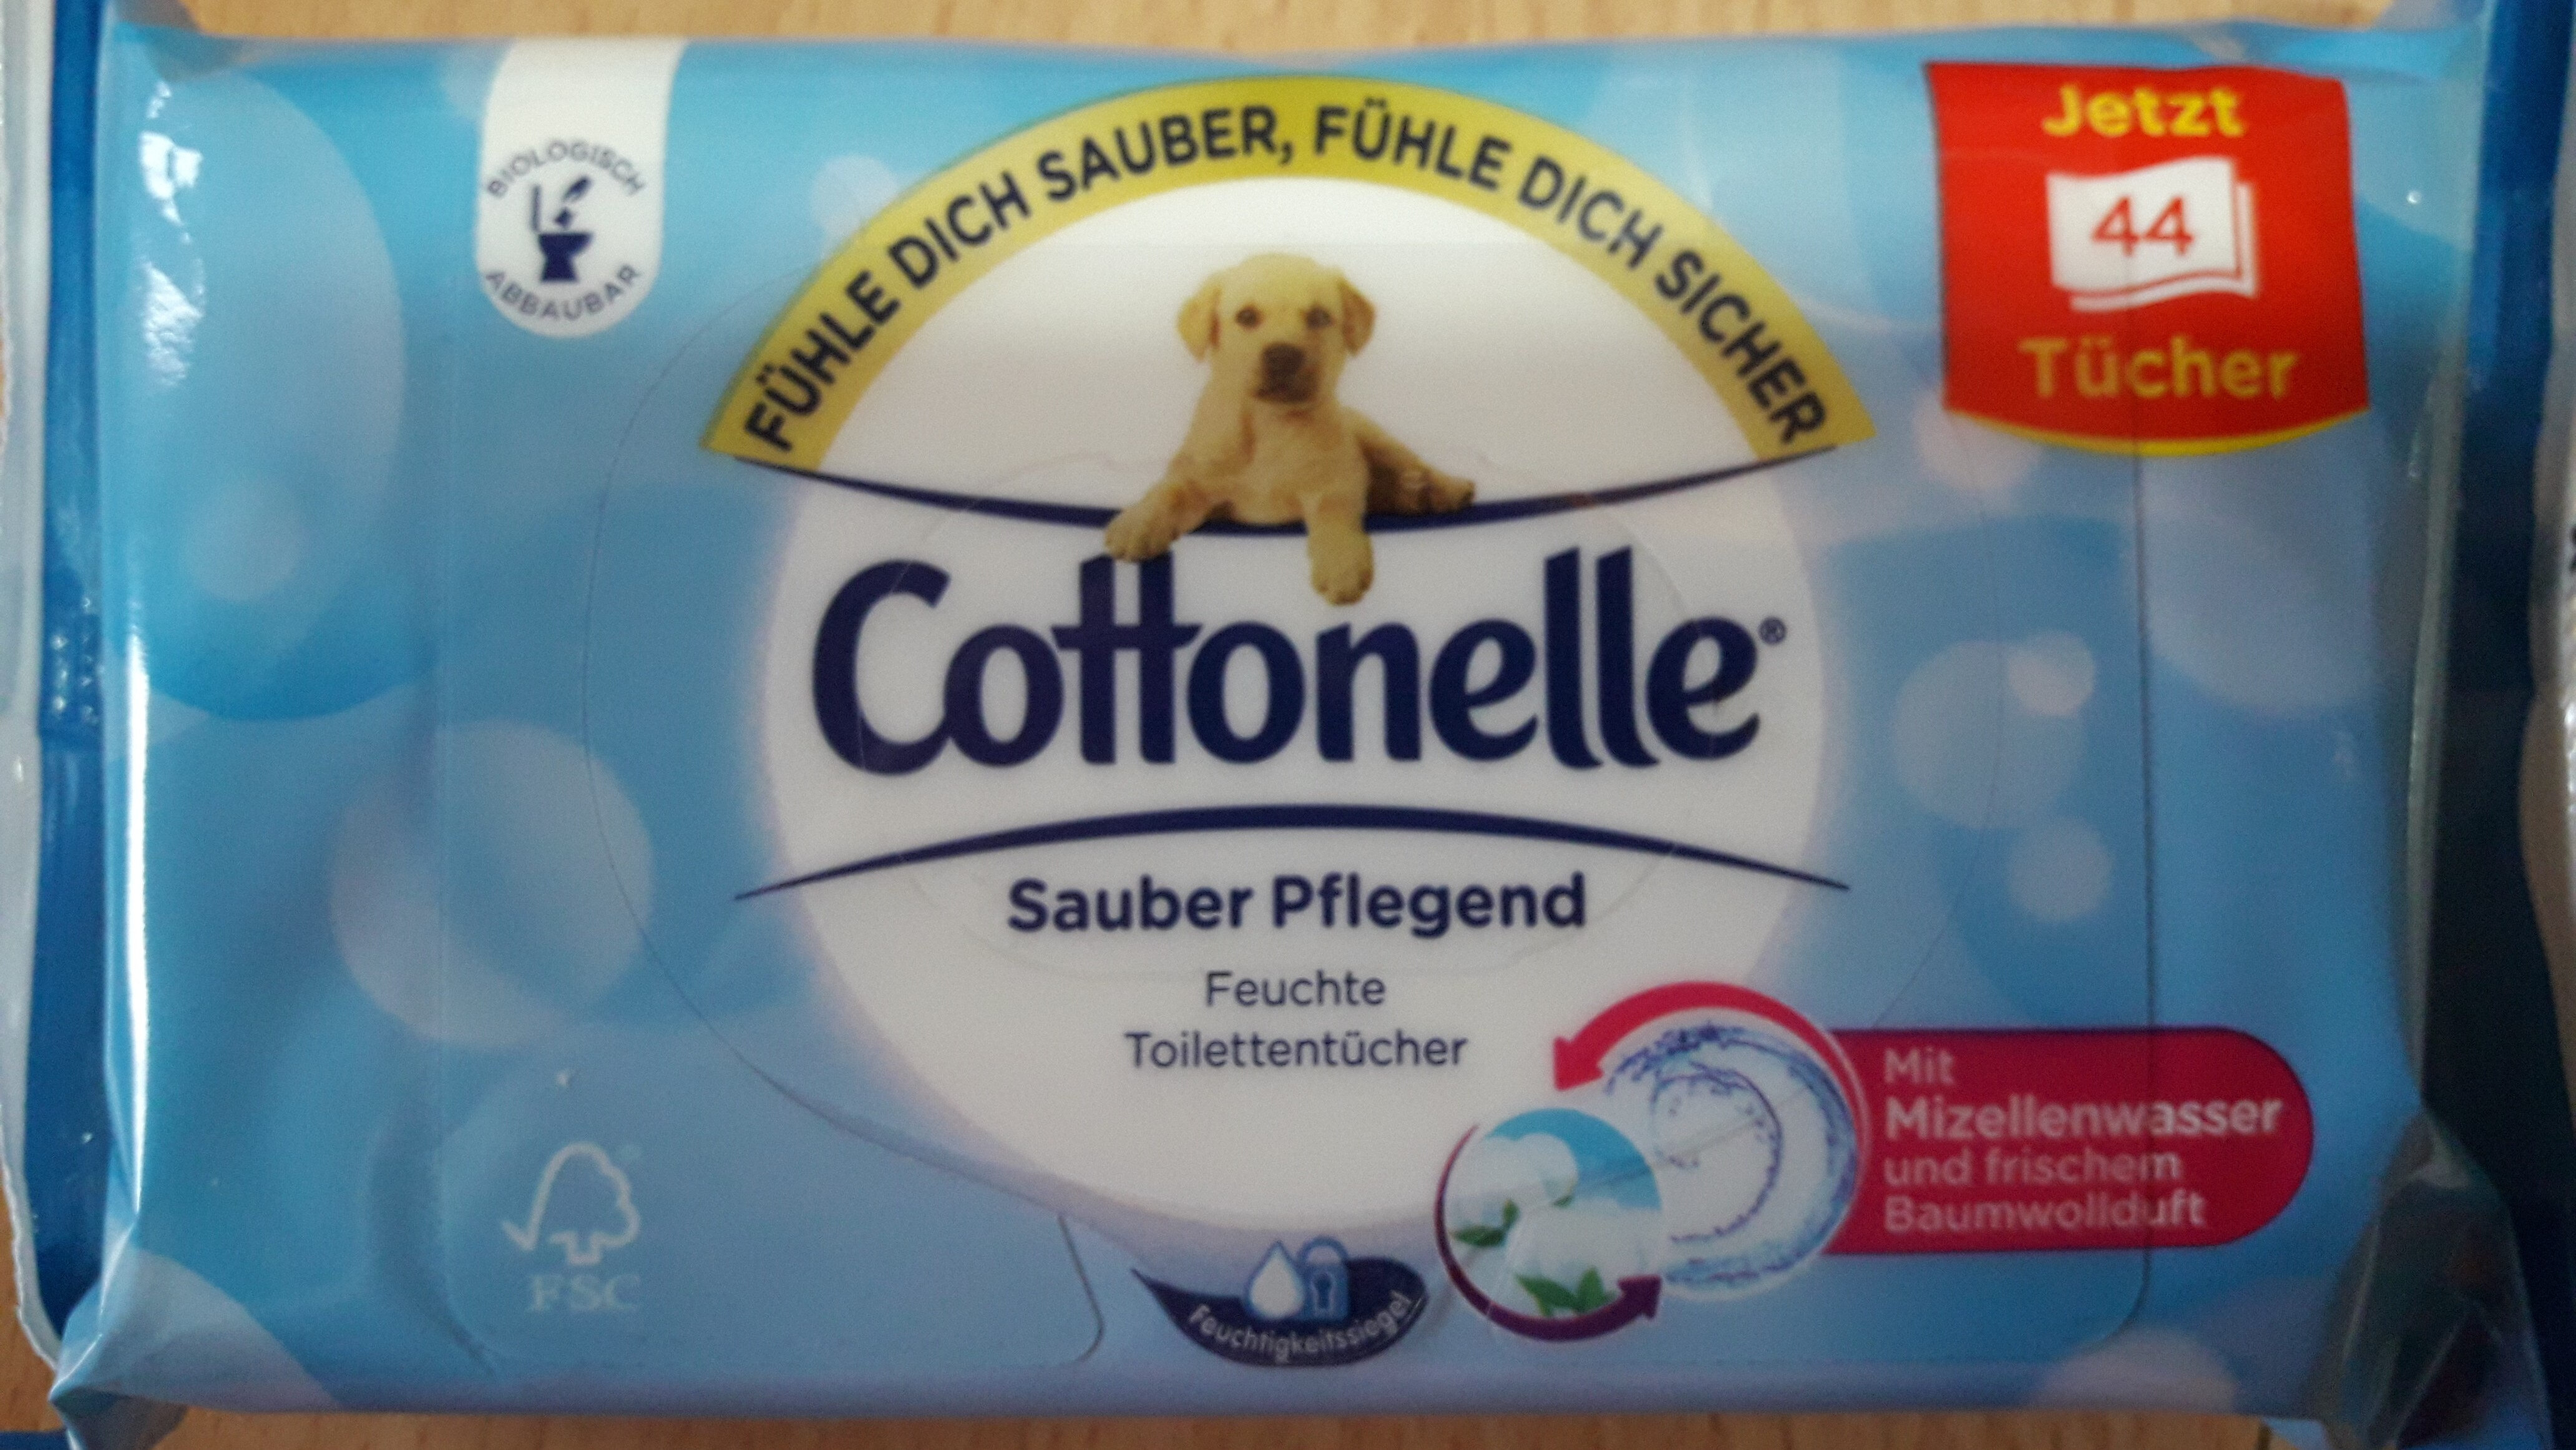 Cottonelle feuchte Toilettentücher - Product - de